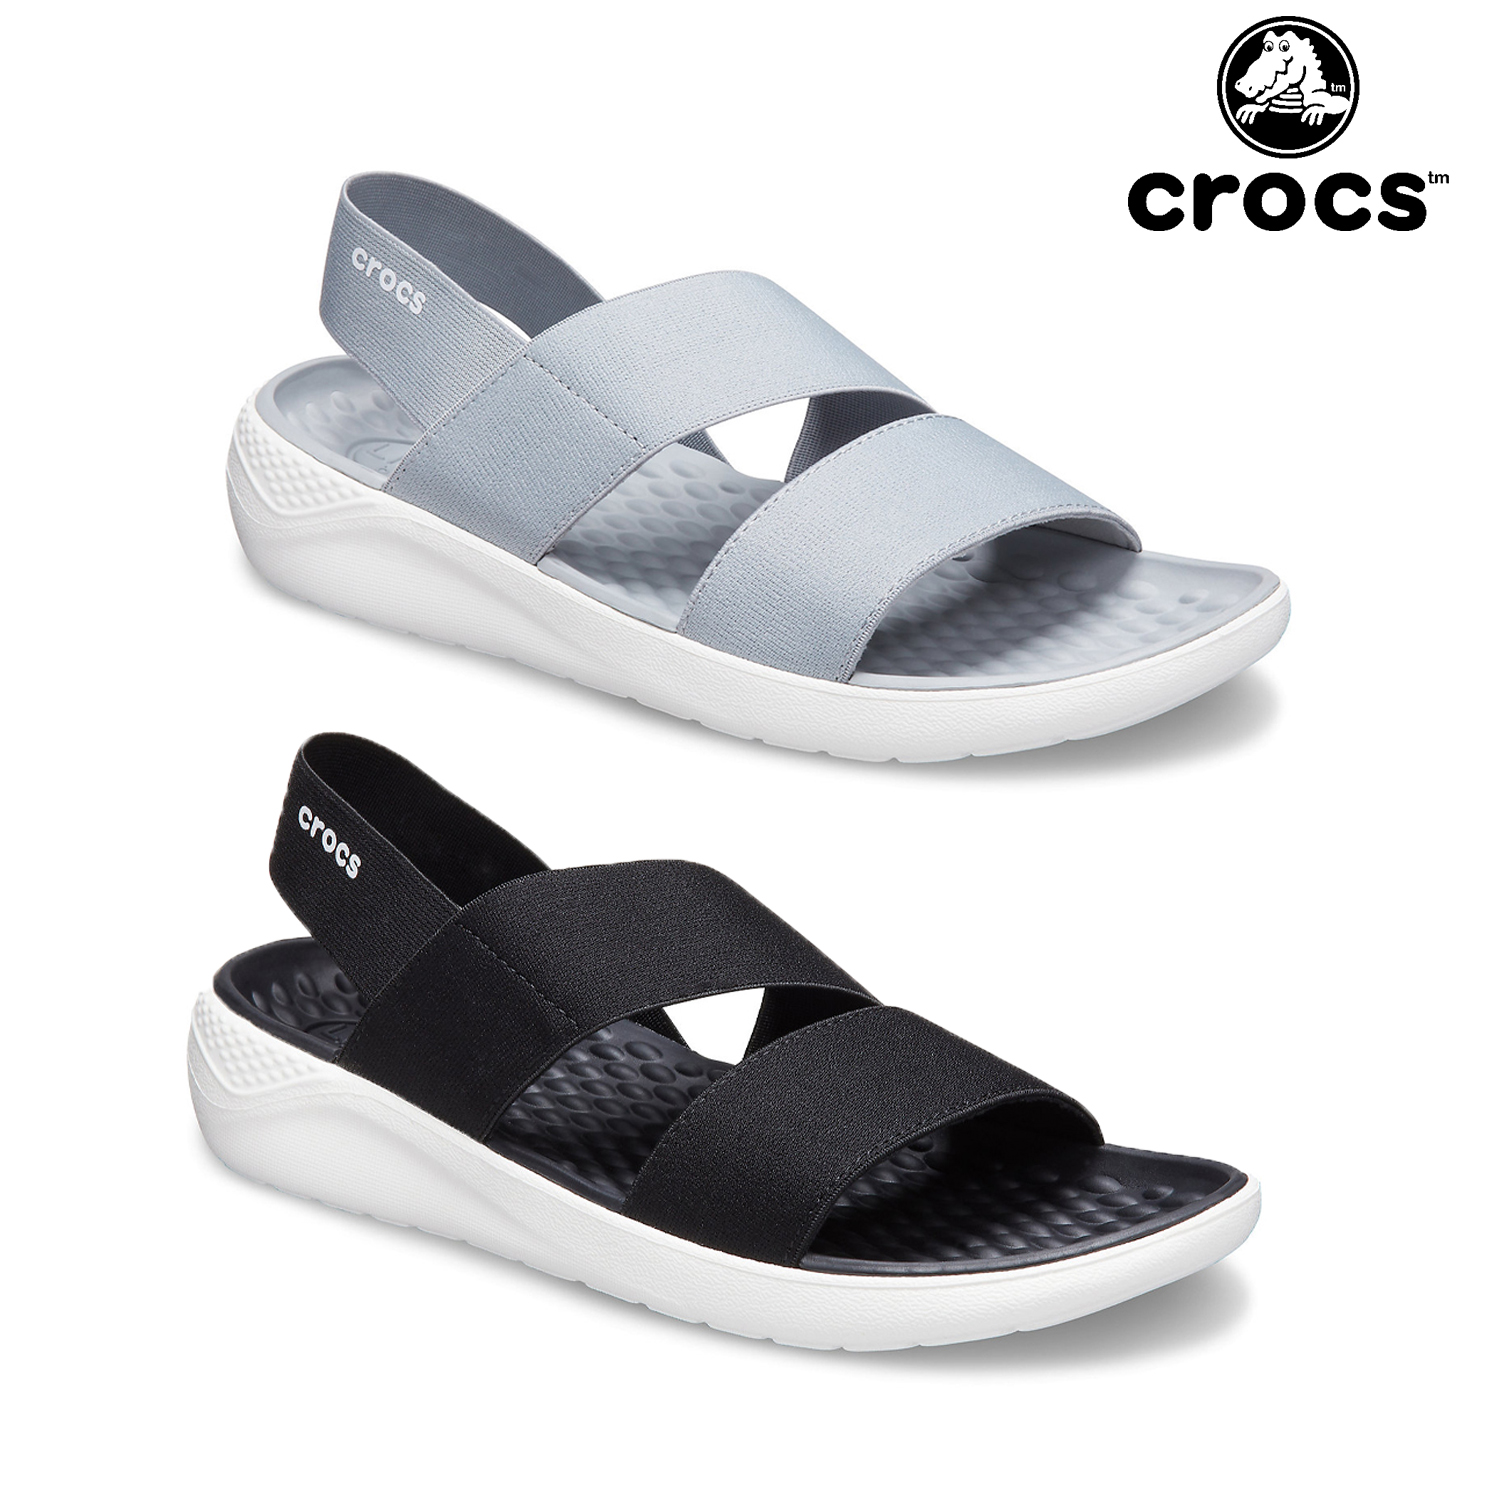 crocs strappy flip flop